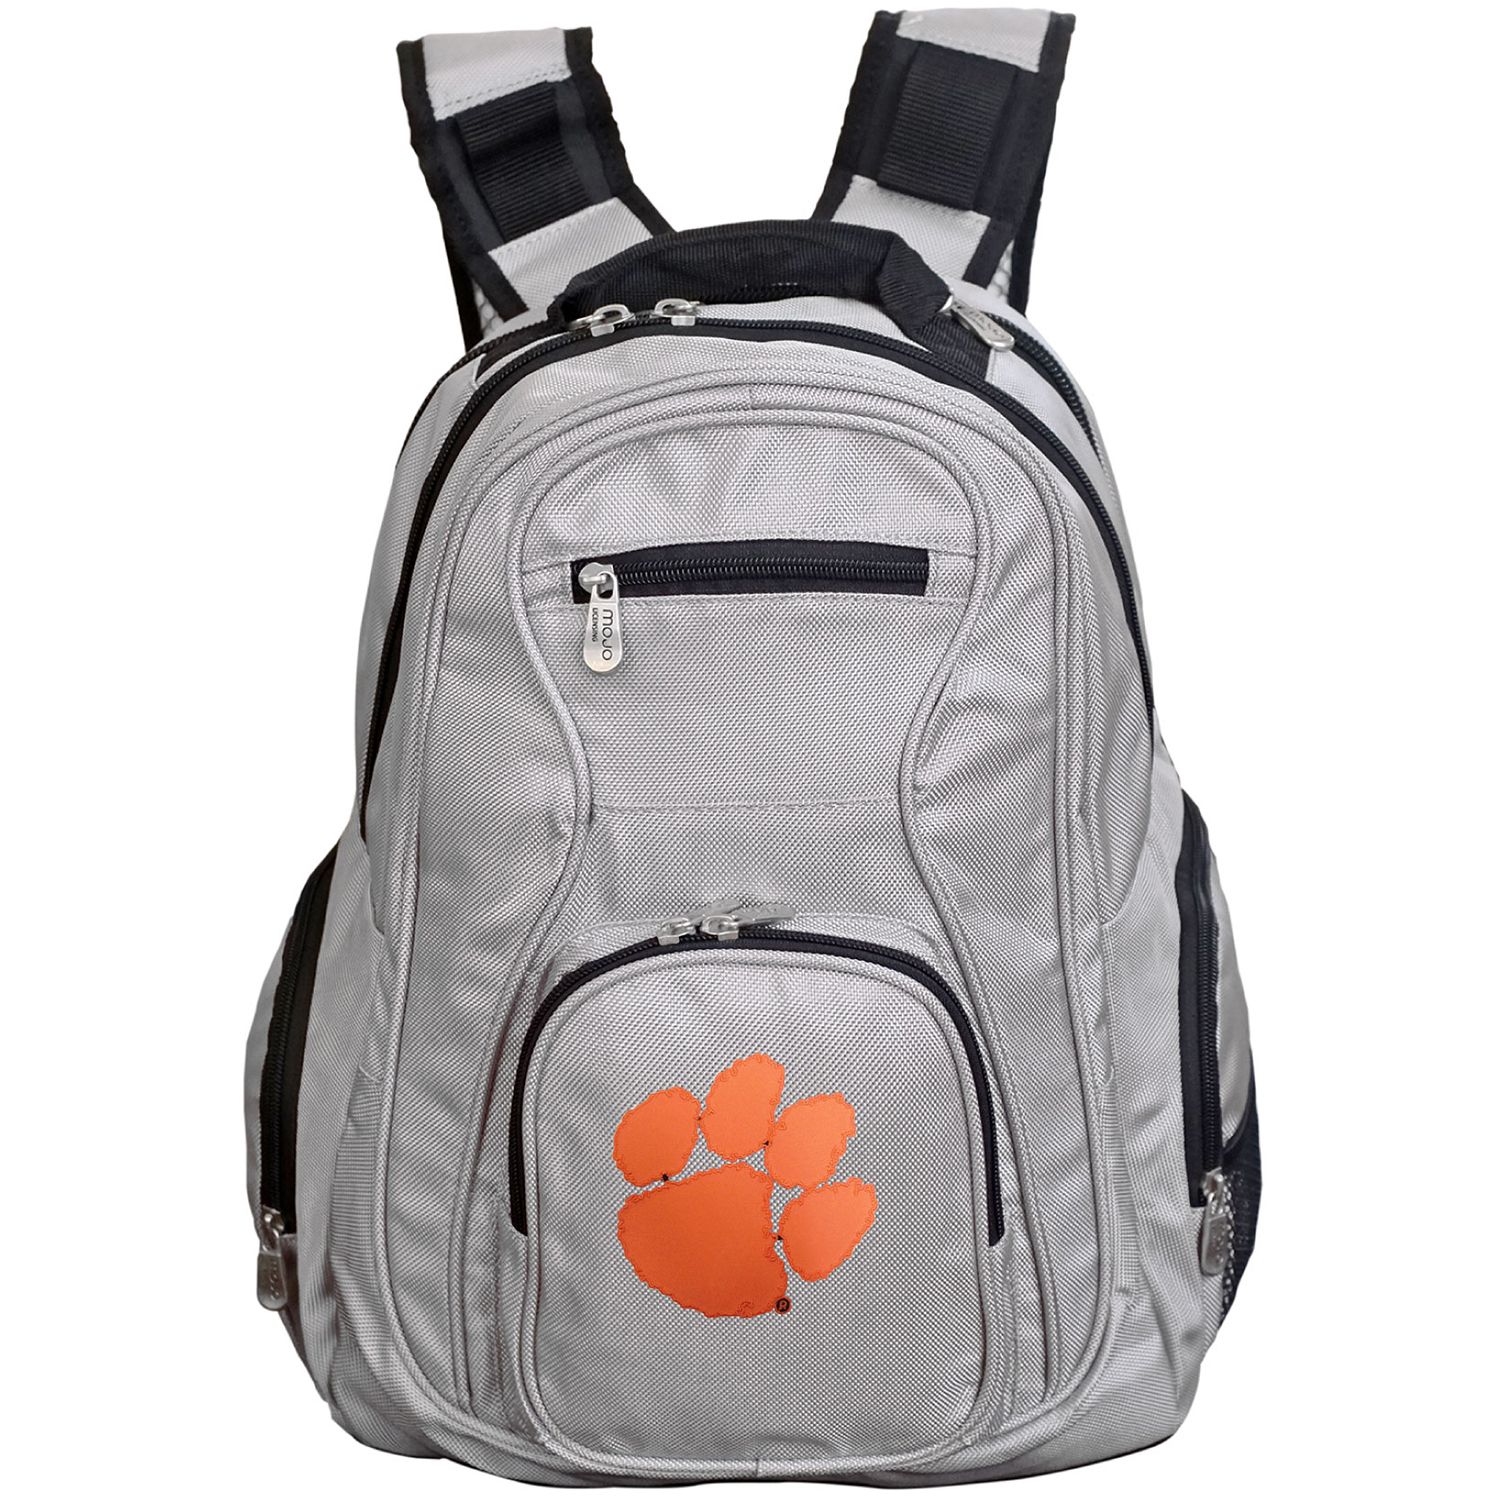 Рюкзак для ноутбука Clemson Tigers премиум-класса рюкзак для ноутбука премиум класса lsu tigers